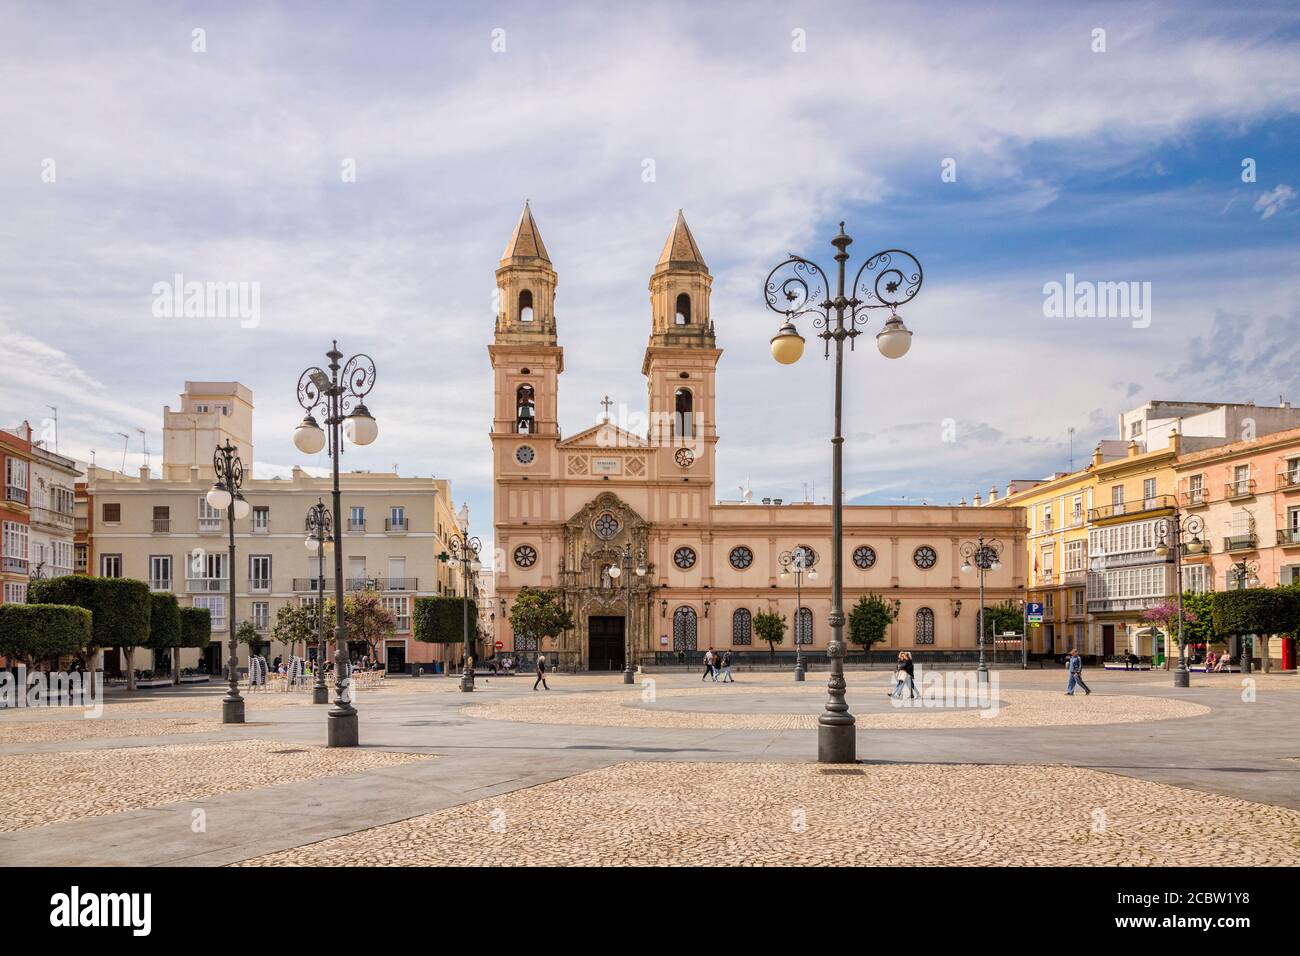 12 mars 2020: Cadix, Espagne - la Plaza de San Antonio et son église au soleil de printemps, Cadix. Banque D'Images